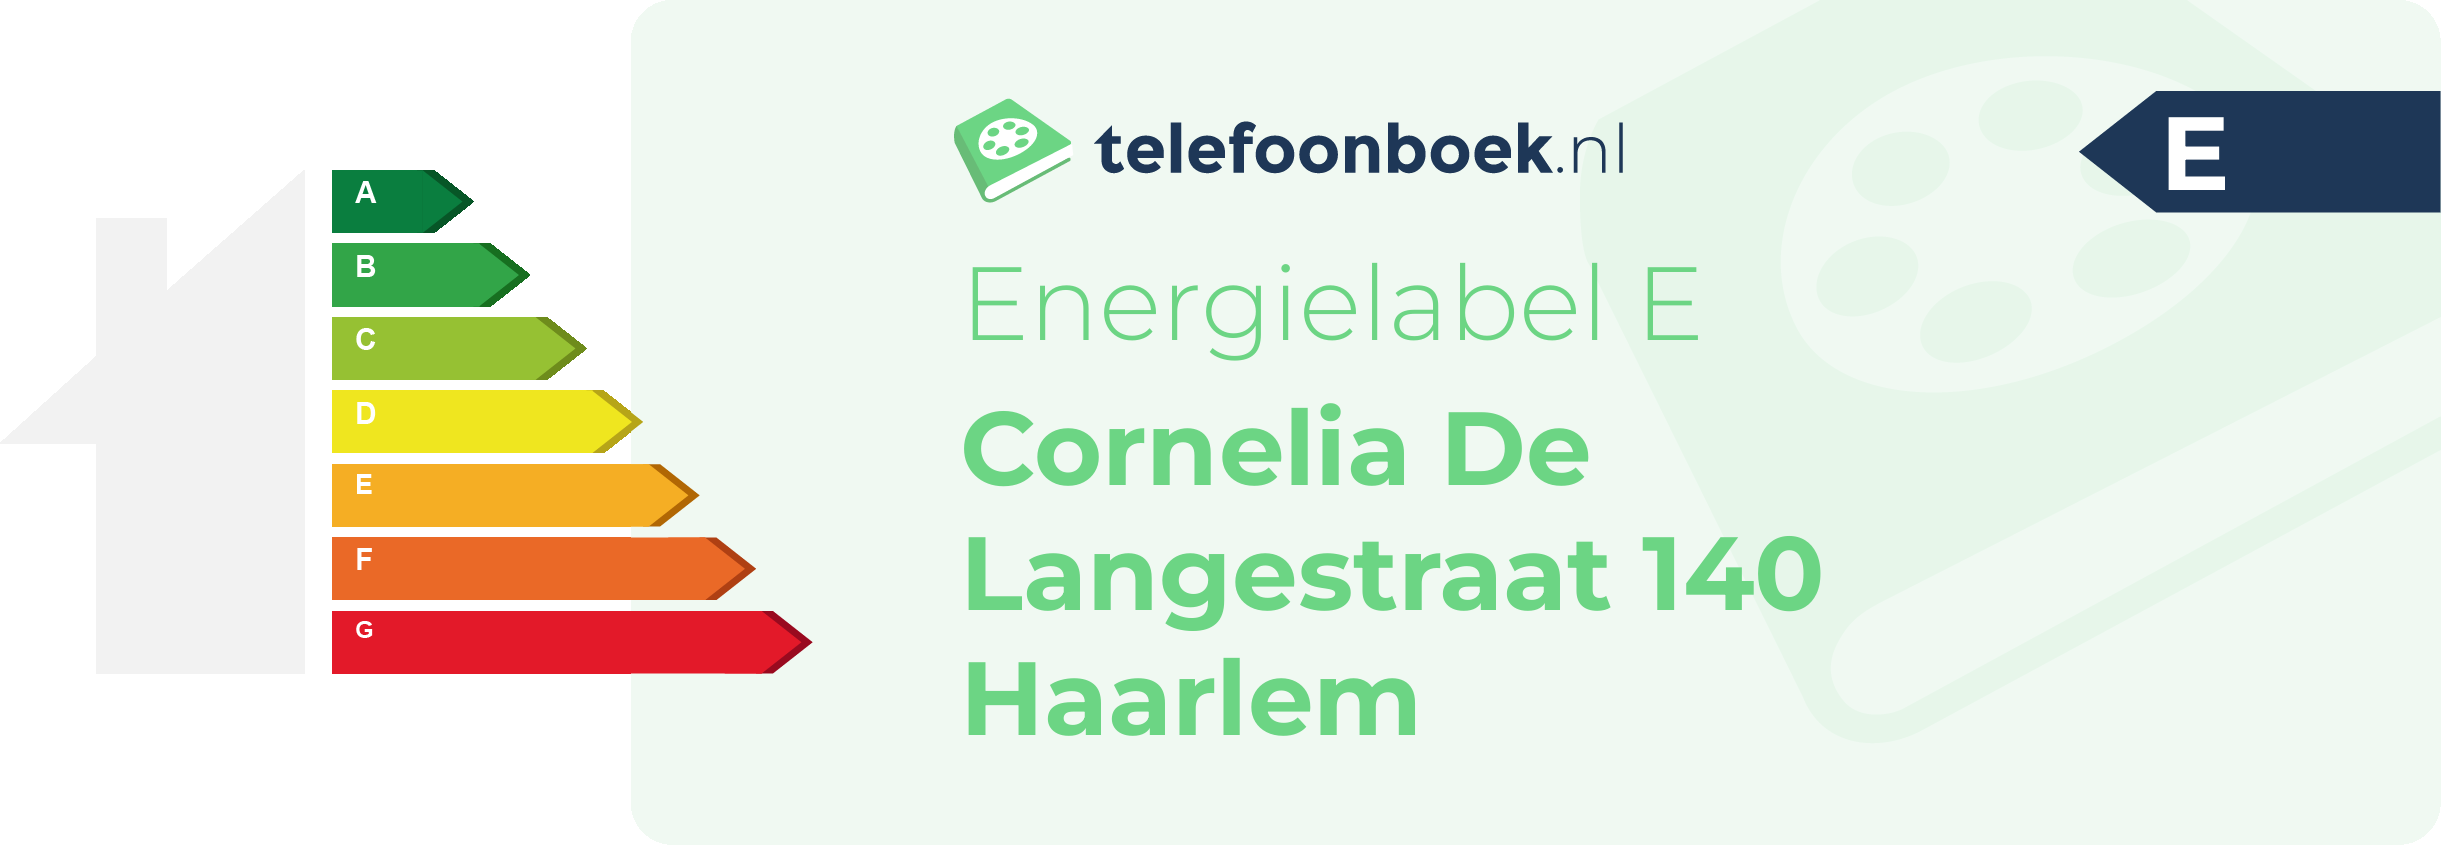 Energielabel Cornelia De Langestraat 140 Haarlem